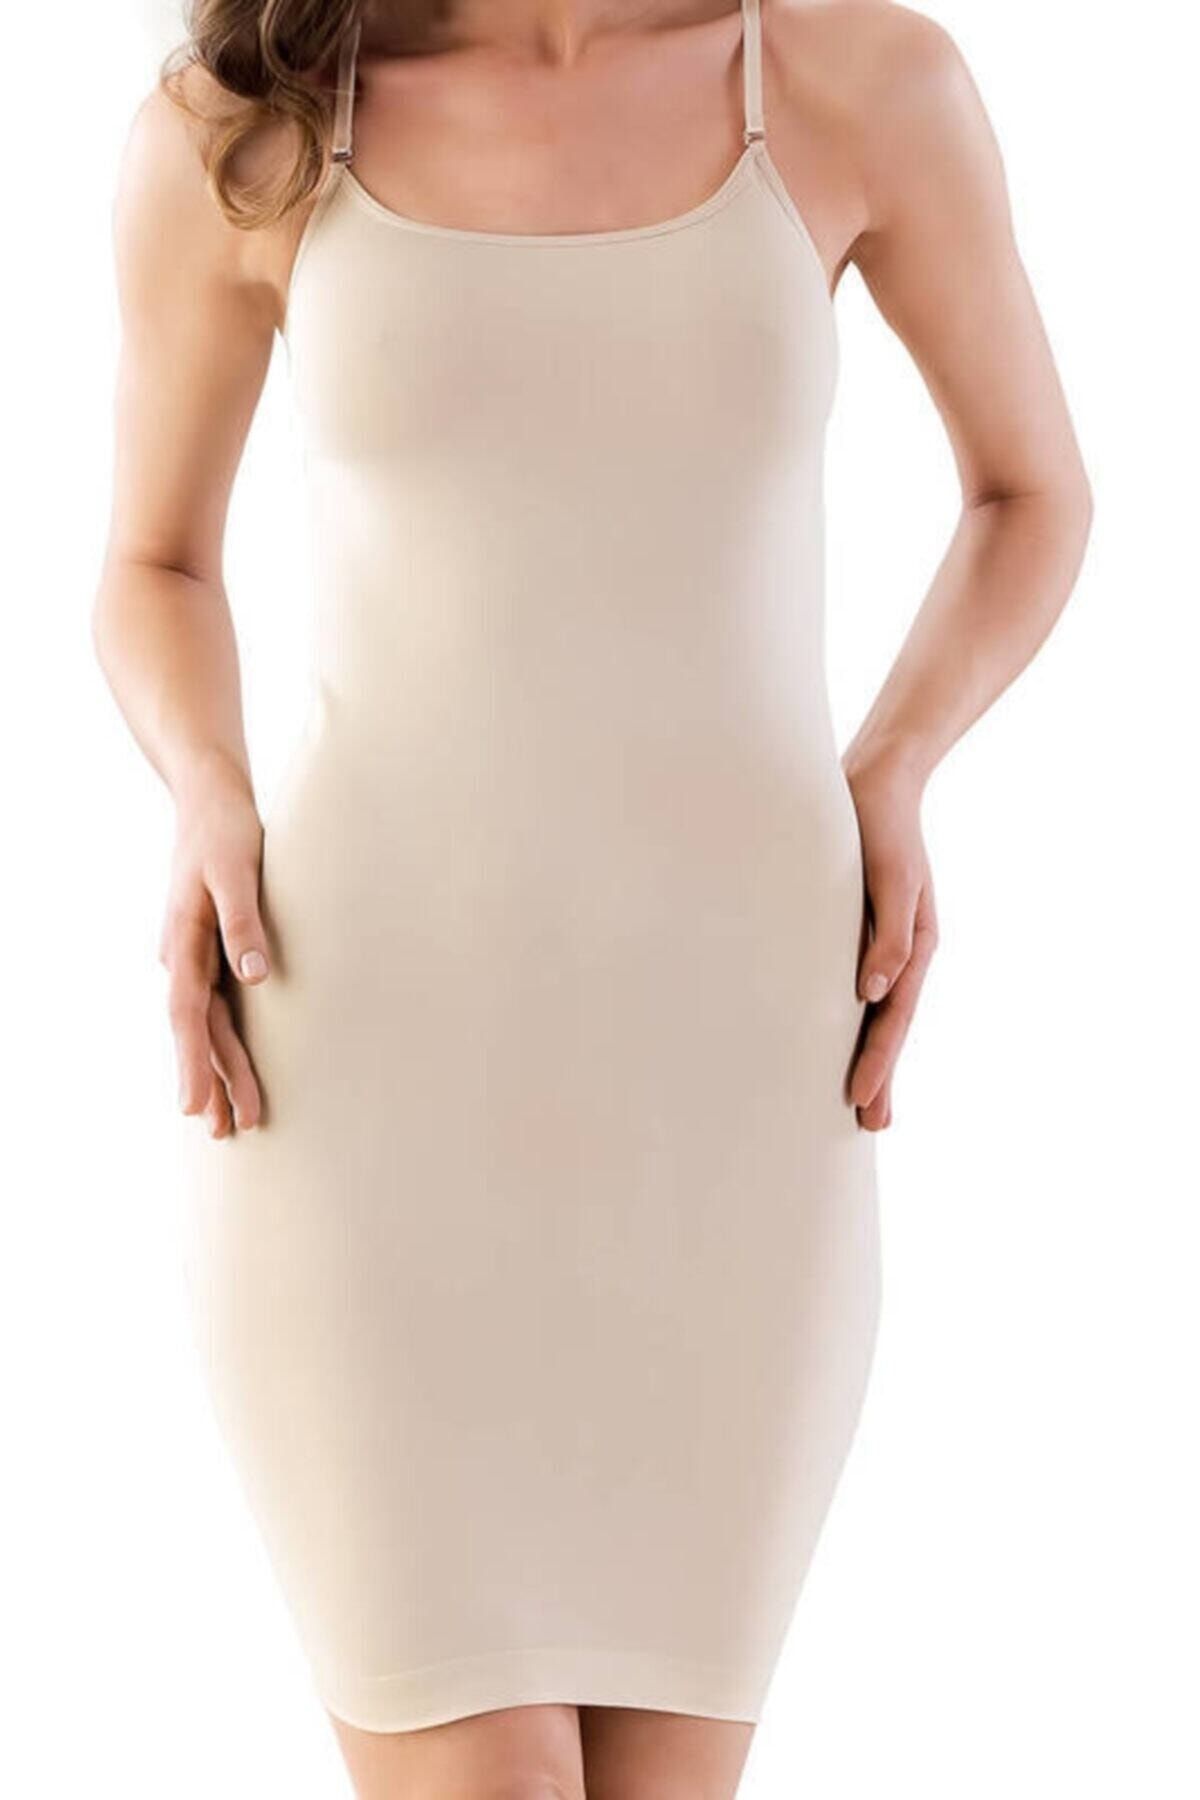 Emay Kadın Bej Korse Toparlayıcı Elbise 5050